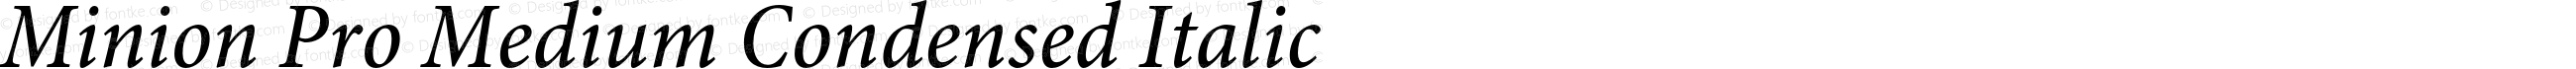 Minion Pro Medium Condensed Italic